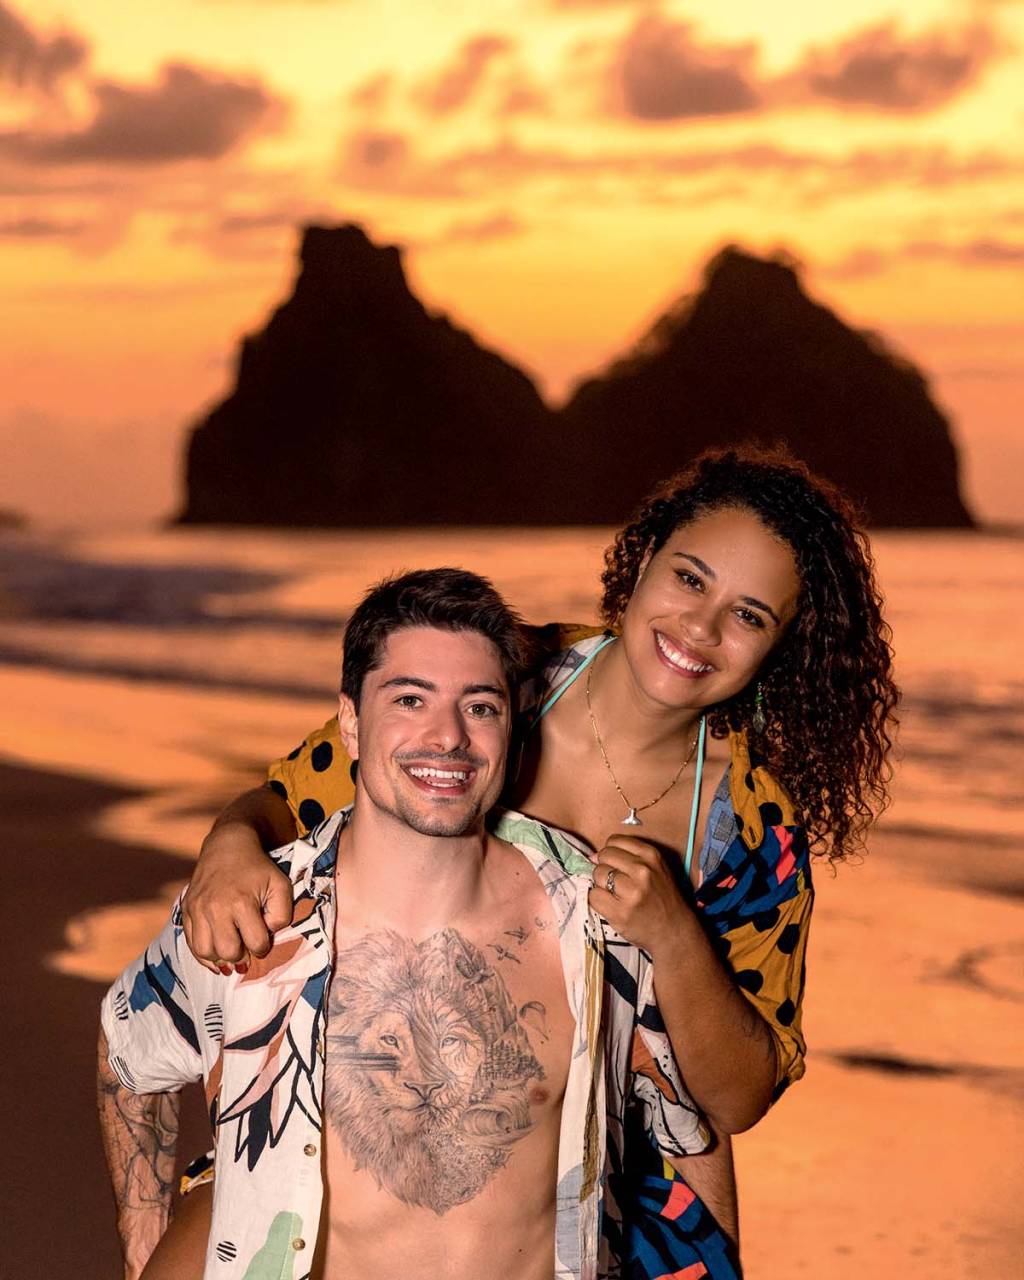 Homem branco de peito tatuado e camisa estampada posa com a esposa segurando seus ombros, uma mulher negra de cabelos cacheados. Posam com uma praia em tons alaranjados ao fundo.